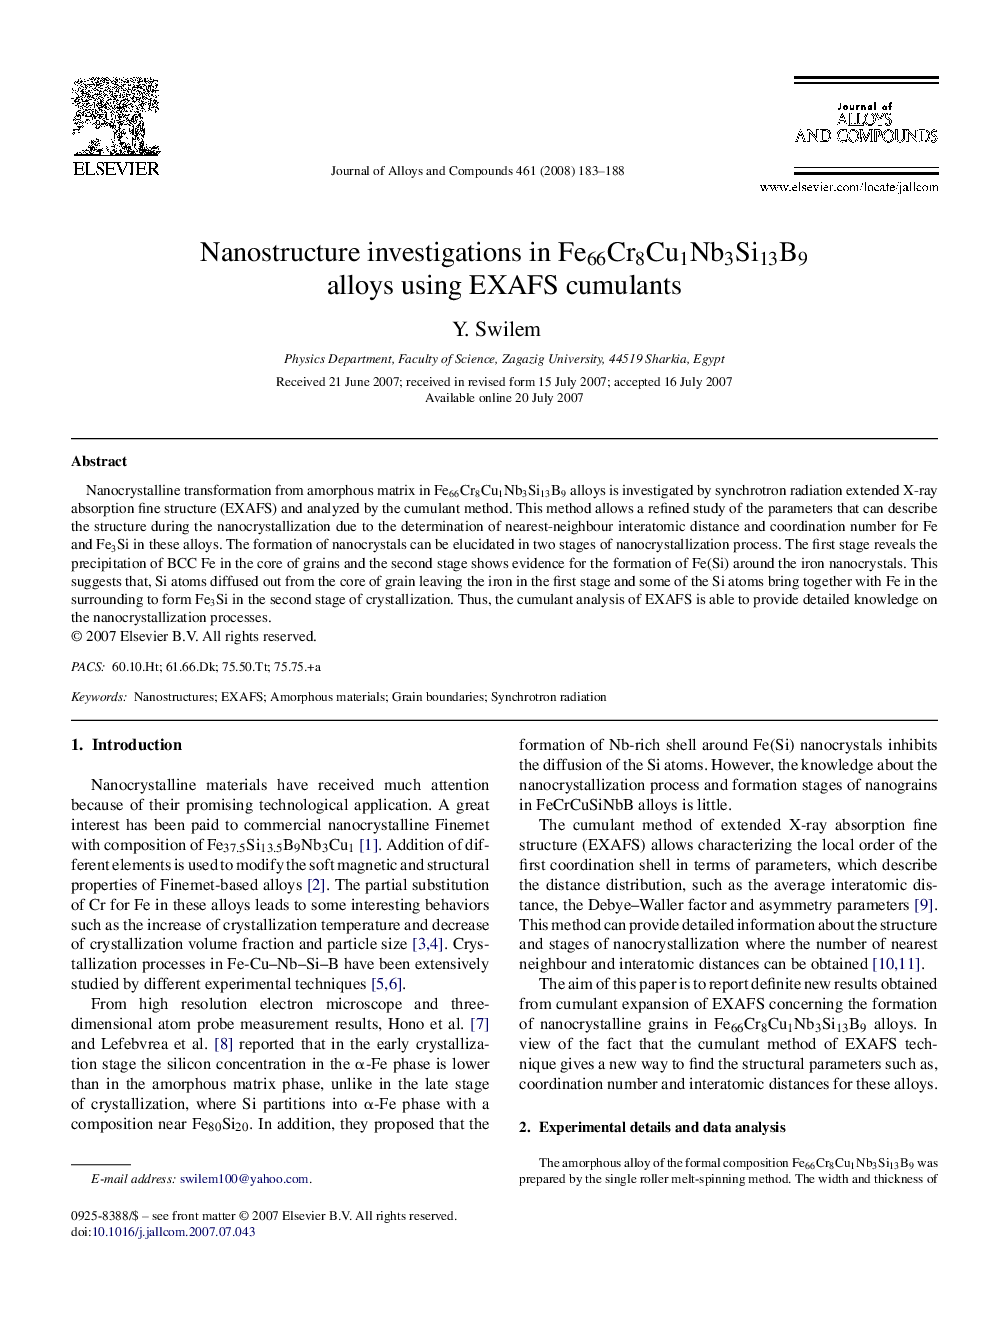 Nanostructure investigations in Fe66Cr8Cu1Nb3Si13B9 alloys using EXAFS cumulants